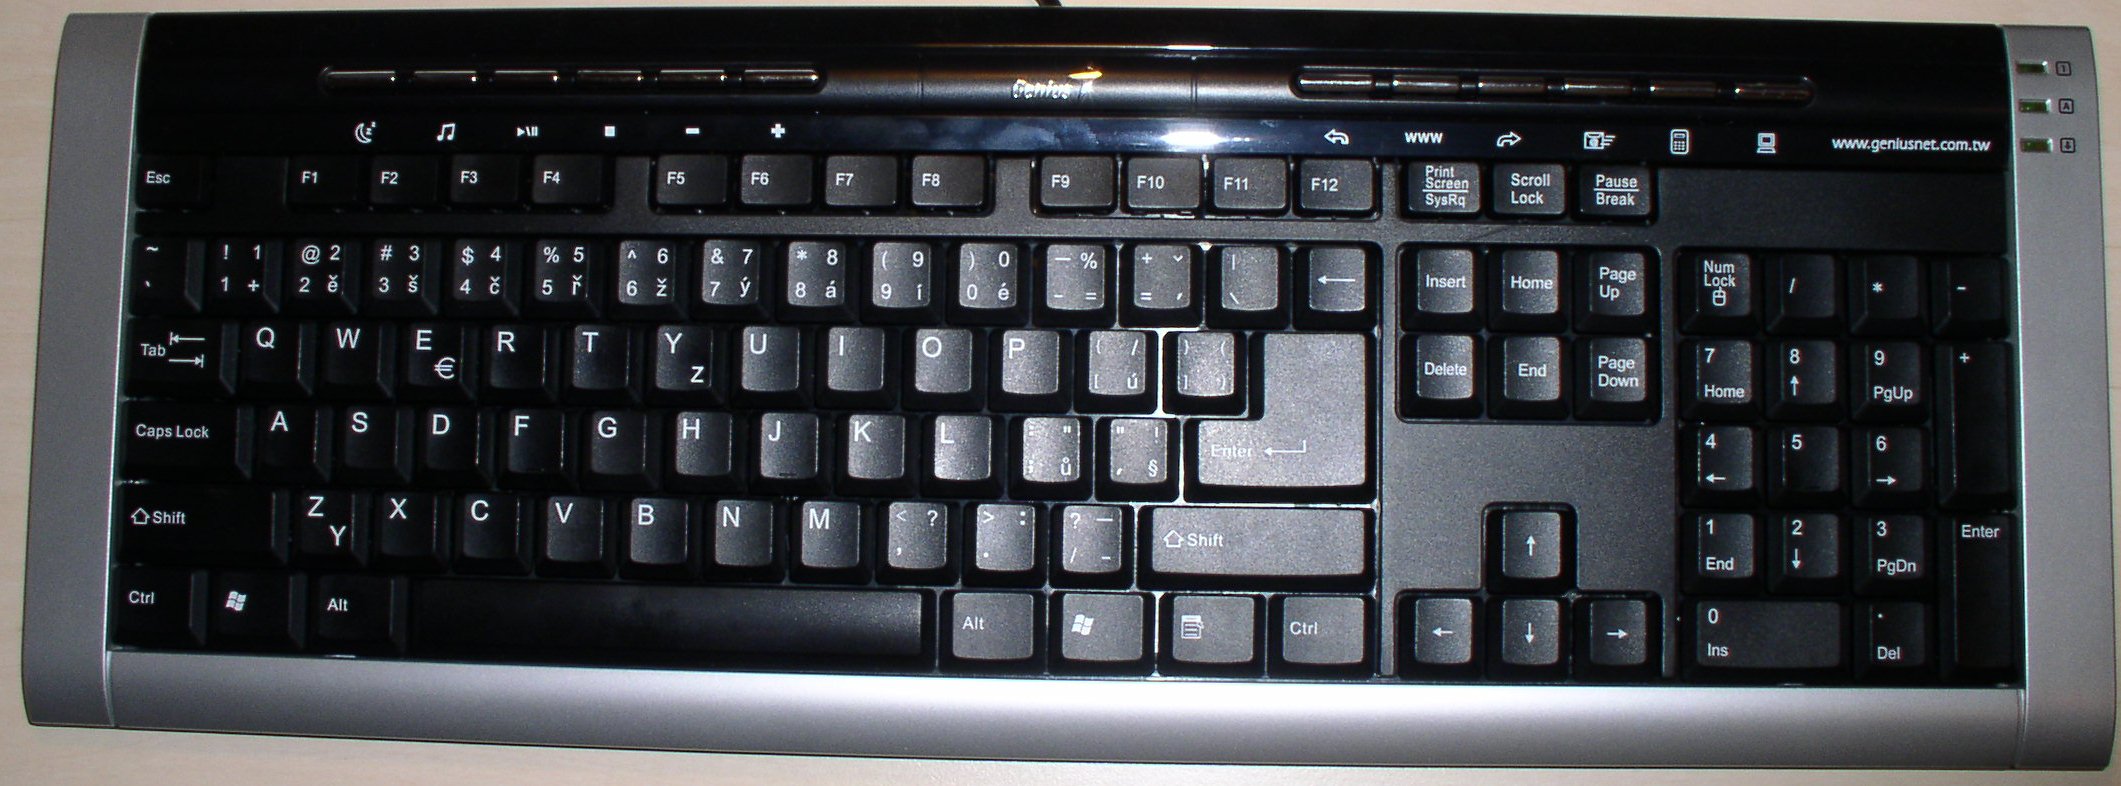 Клавиатура genius k641 драйвер скачать